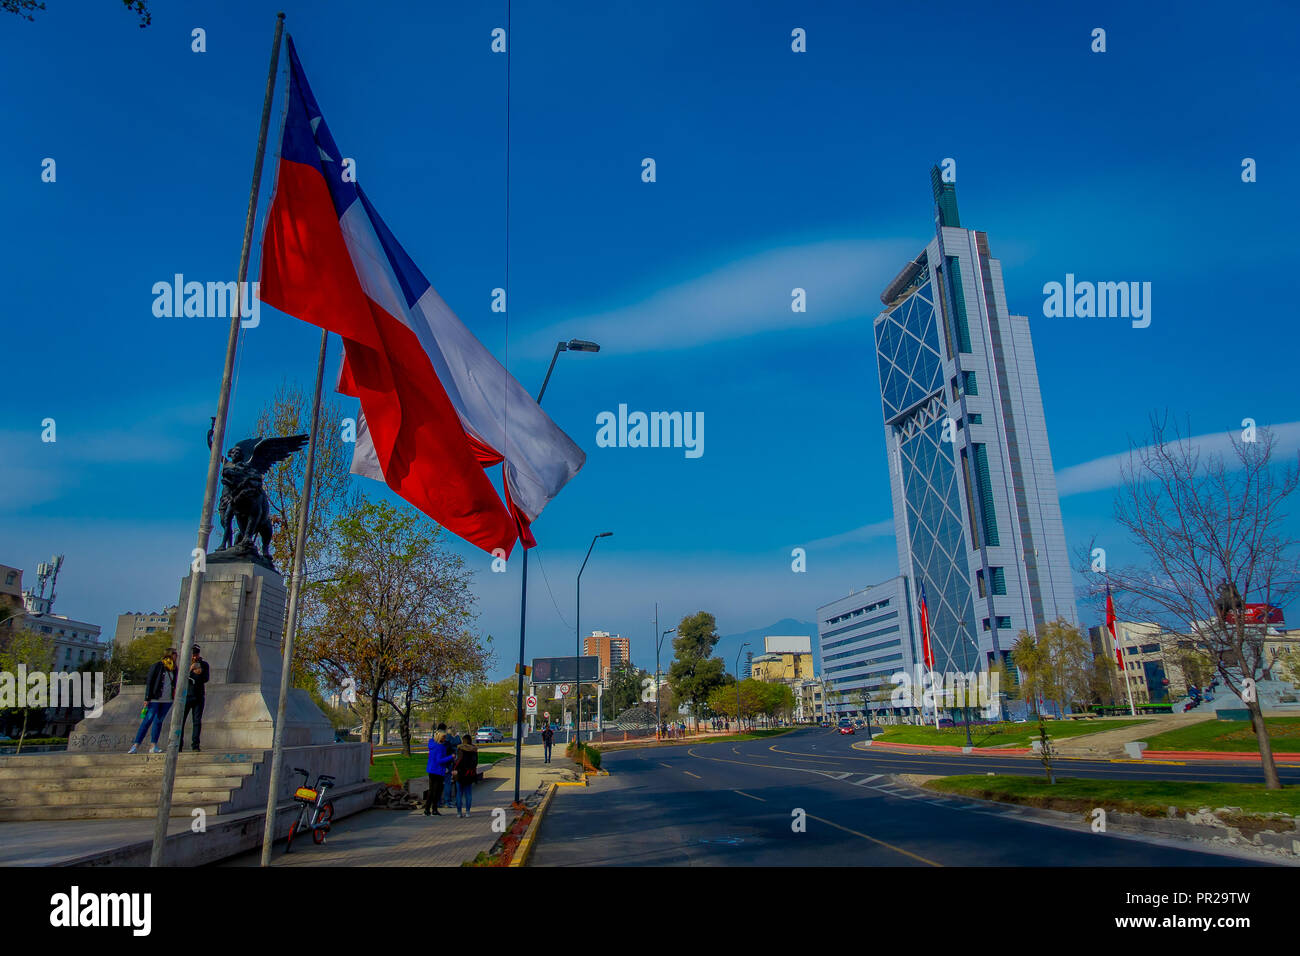 SANTIAGO, CHILI - 14 septembre 2018 : des personnes non identifiées, marcher dans les rues avec un superbe immeubles de bureaux modernes à financial district à Las Condes Banque D'Images